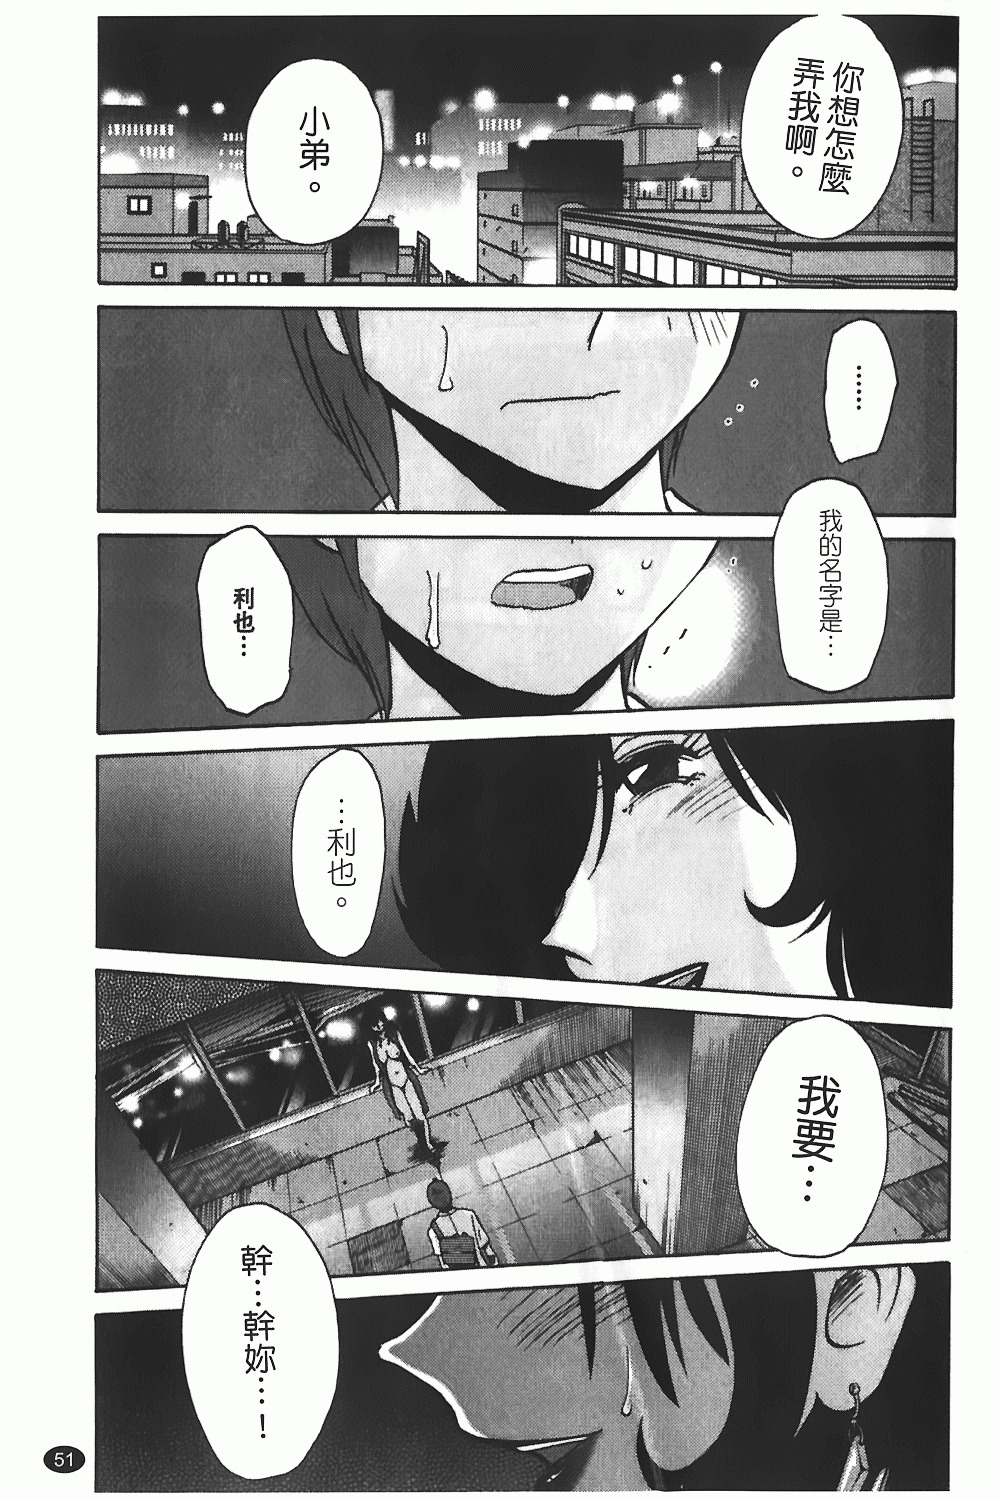 [TsuyaTsuya] Monokage no Iris 1 | 陰影中的伊利斯 1 [Chinese] page 48 full